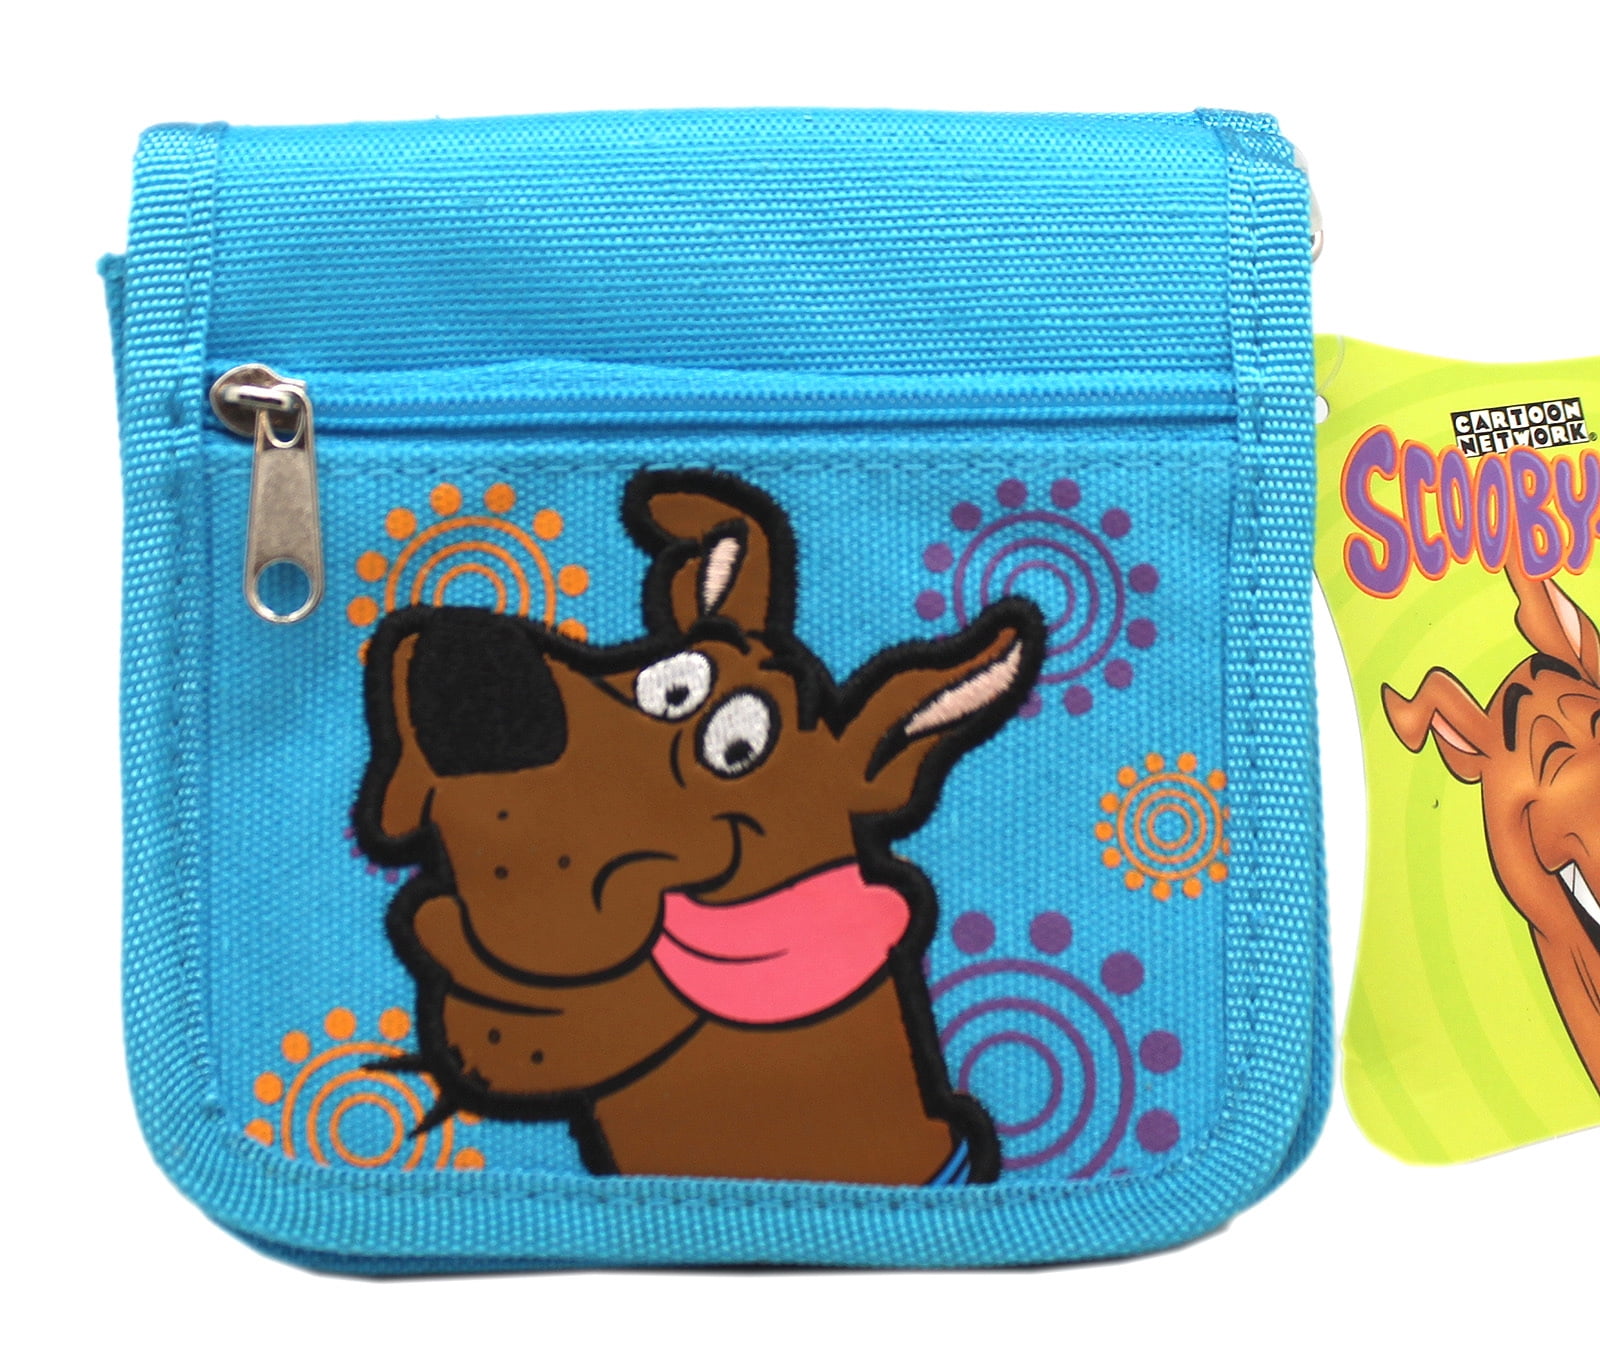 Scooby Doo Wallet 